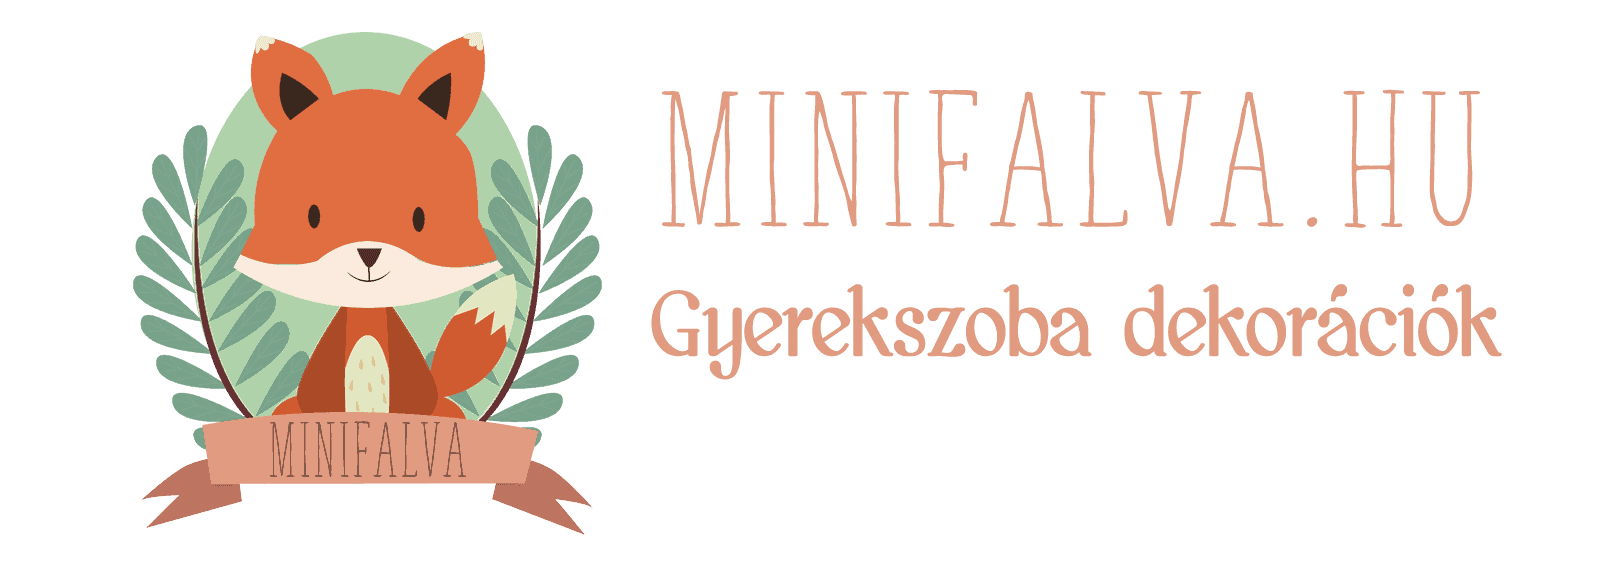 Minifalva - 